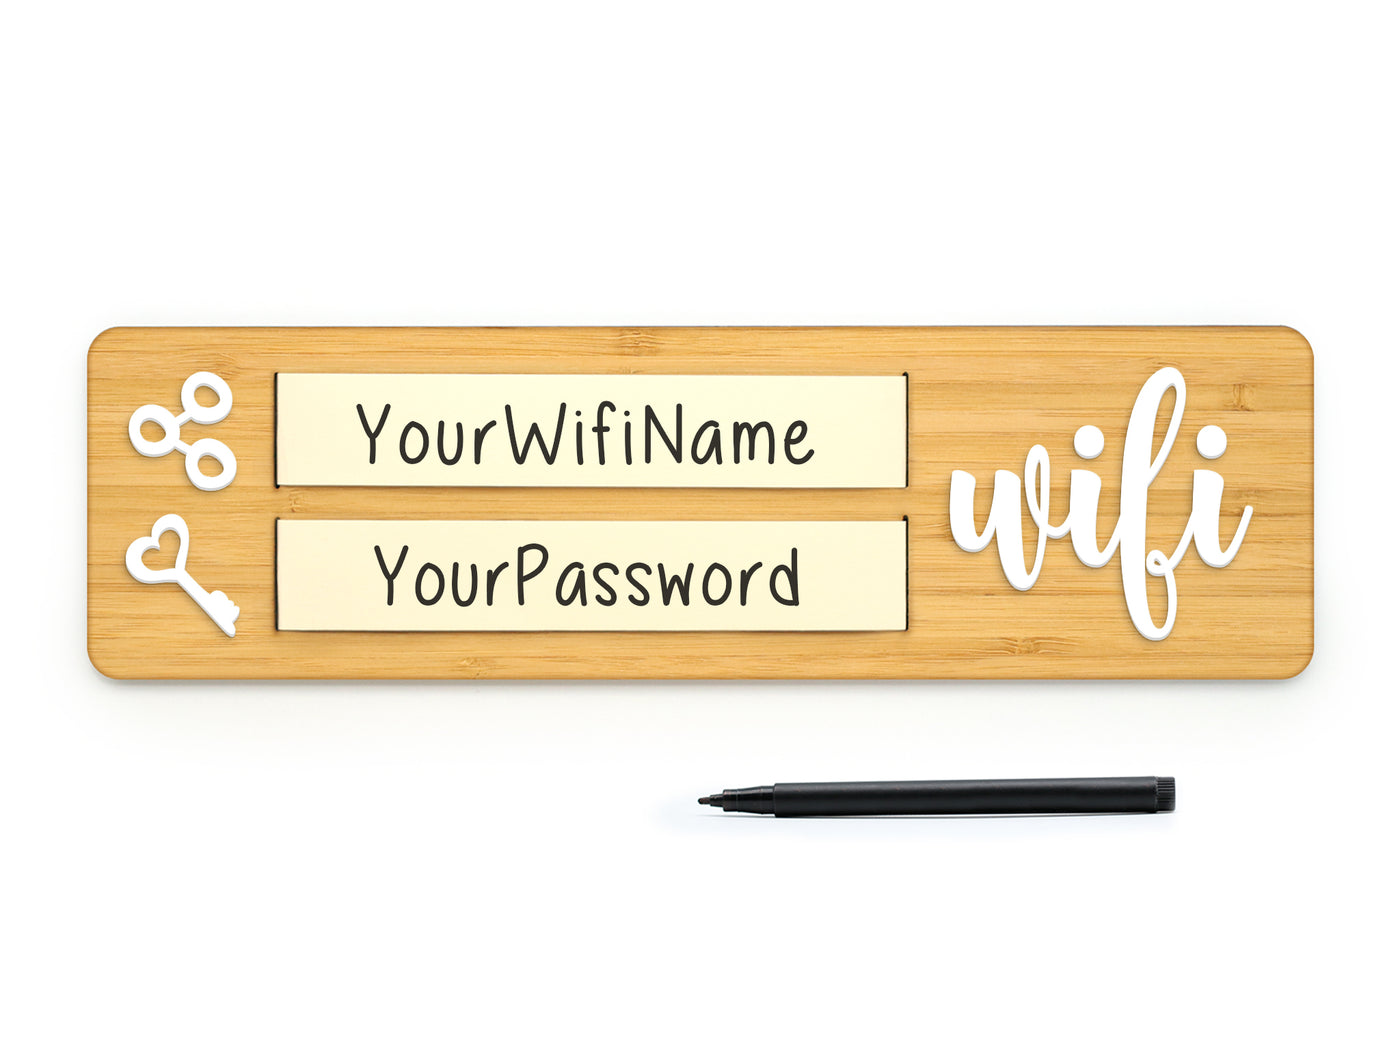 Brush - WiFi WLan für Gäste, Internet Login Passwort Schild